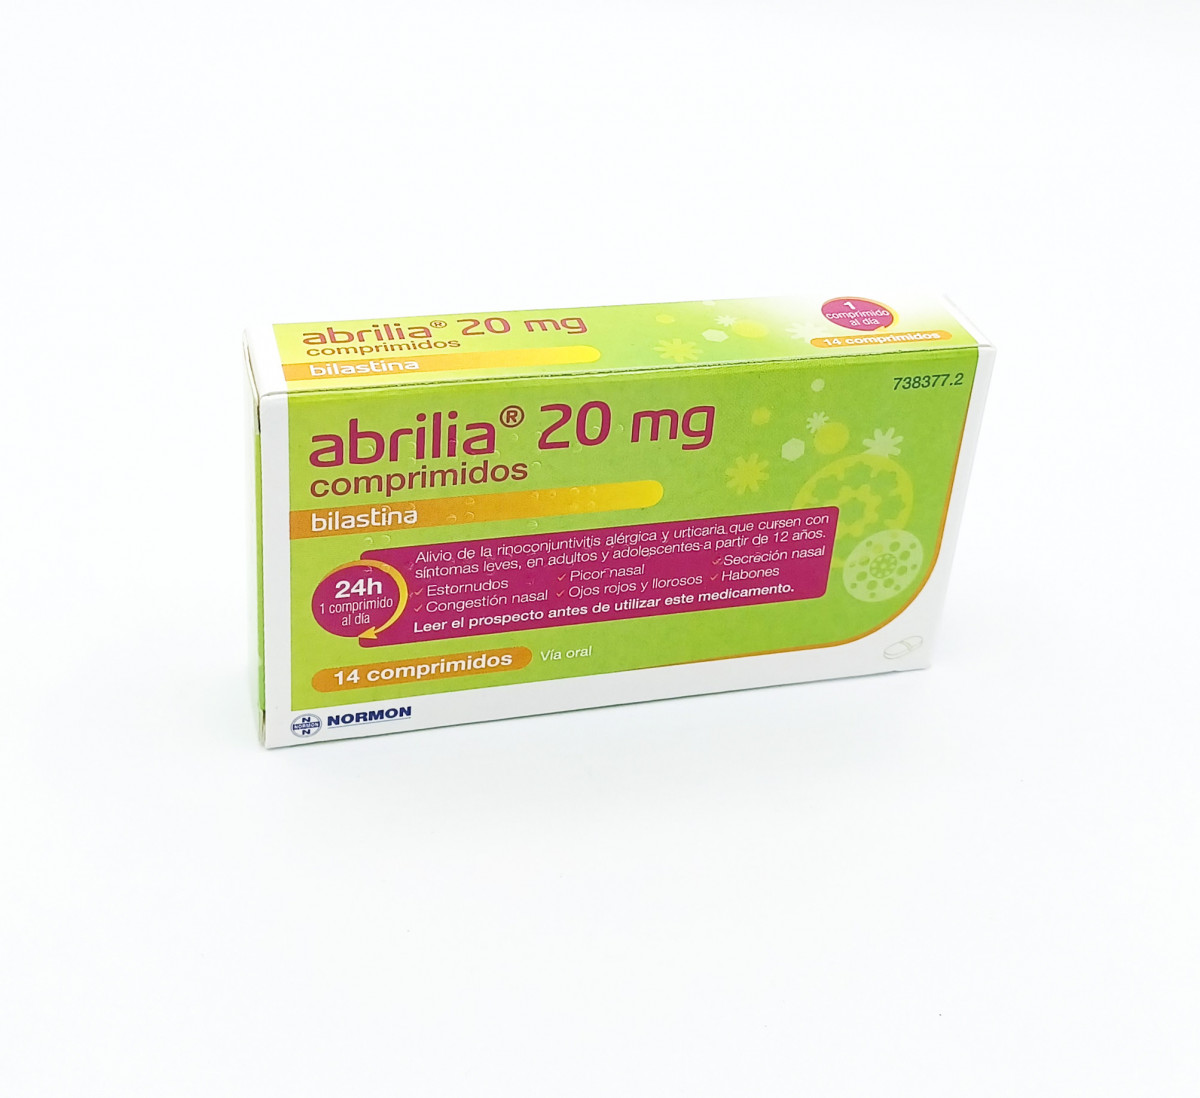 ABRILIA 20 MG COMPRIMIDOS EFG, 20 comprimidos (Bluister Al/Al/PA-PVC) fotografía del envase.